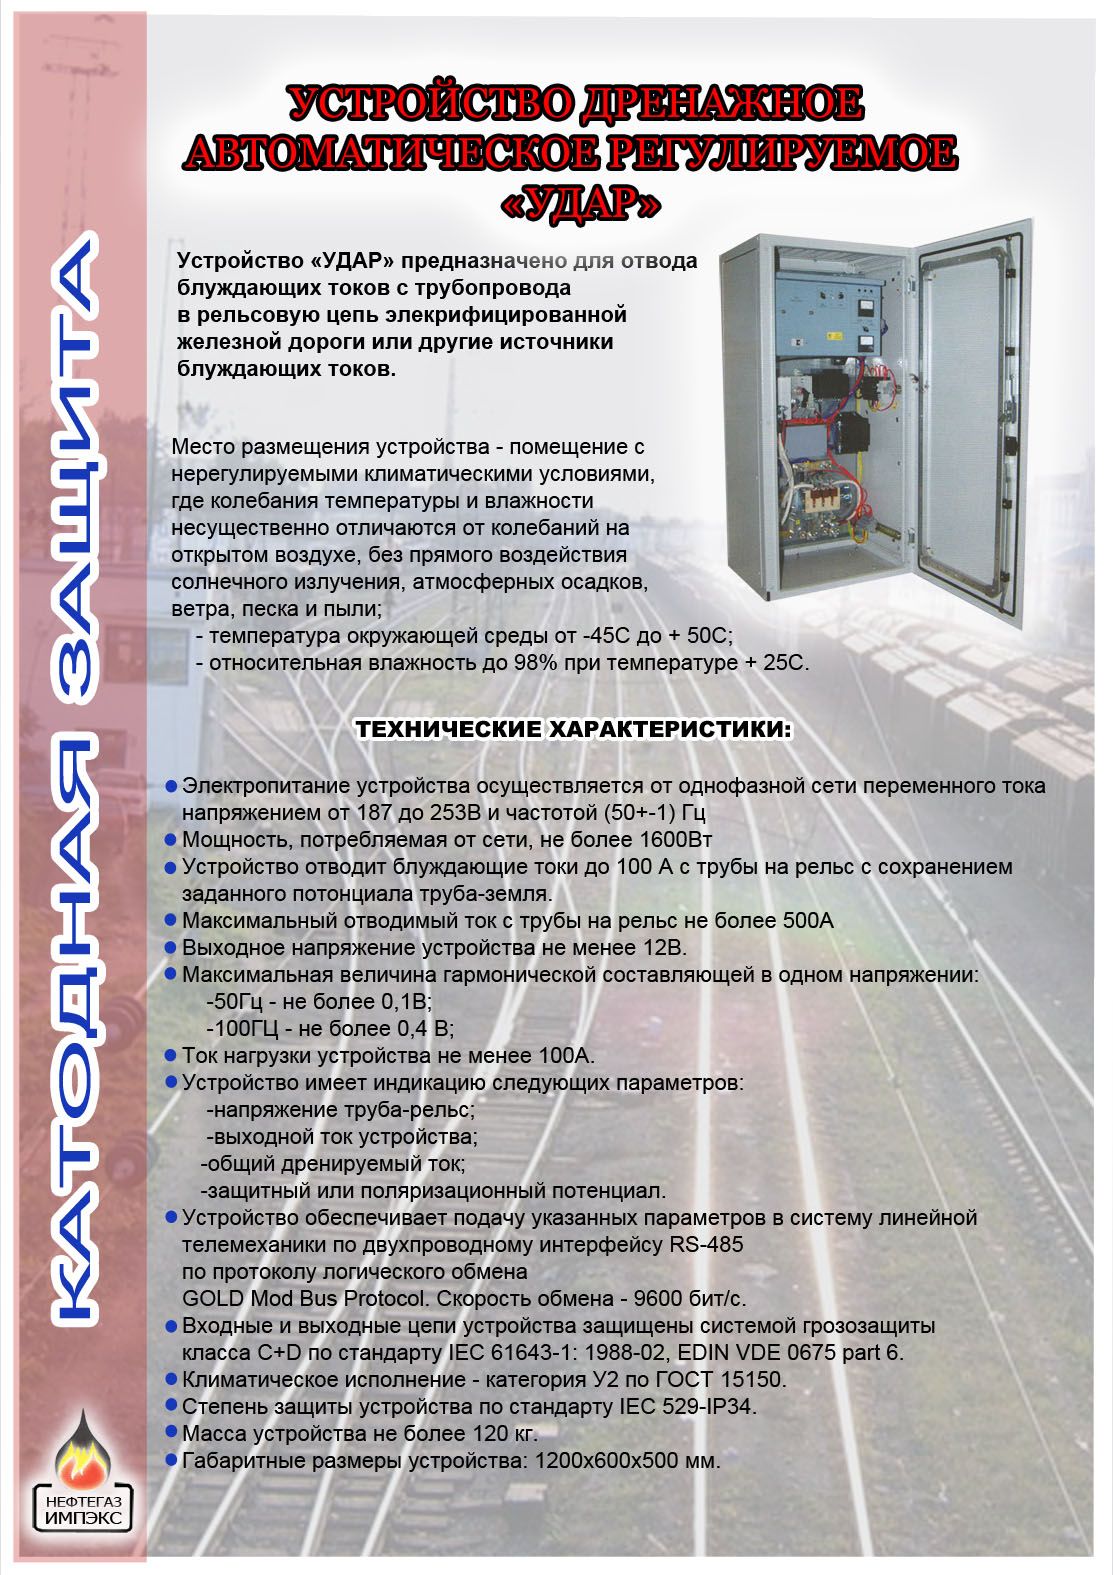 Рекламный буклет оборудования - дизайнер Evgenia_021